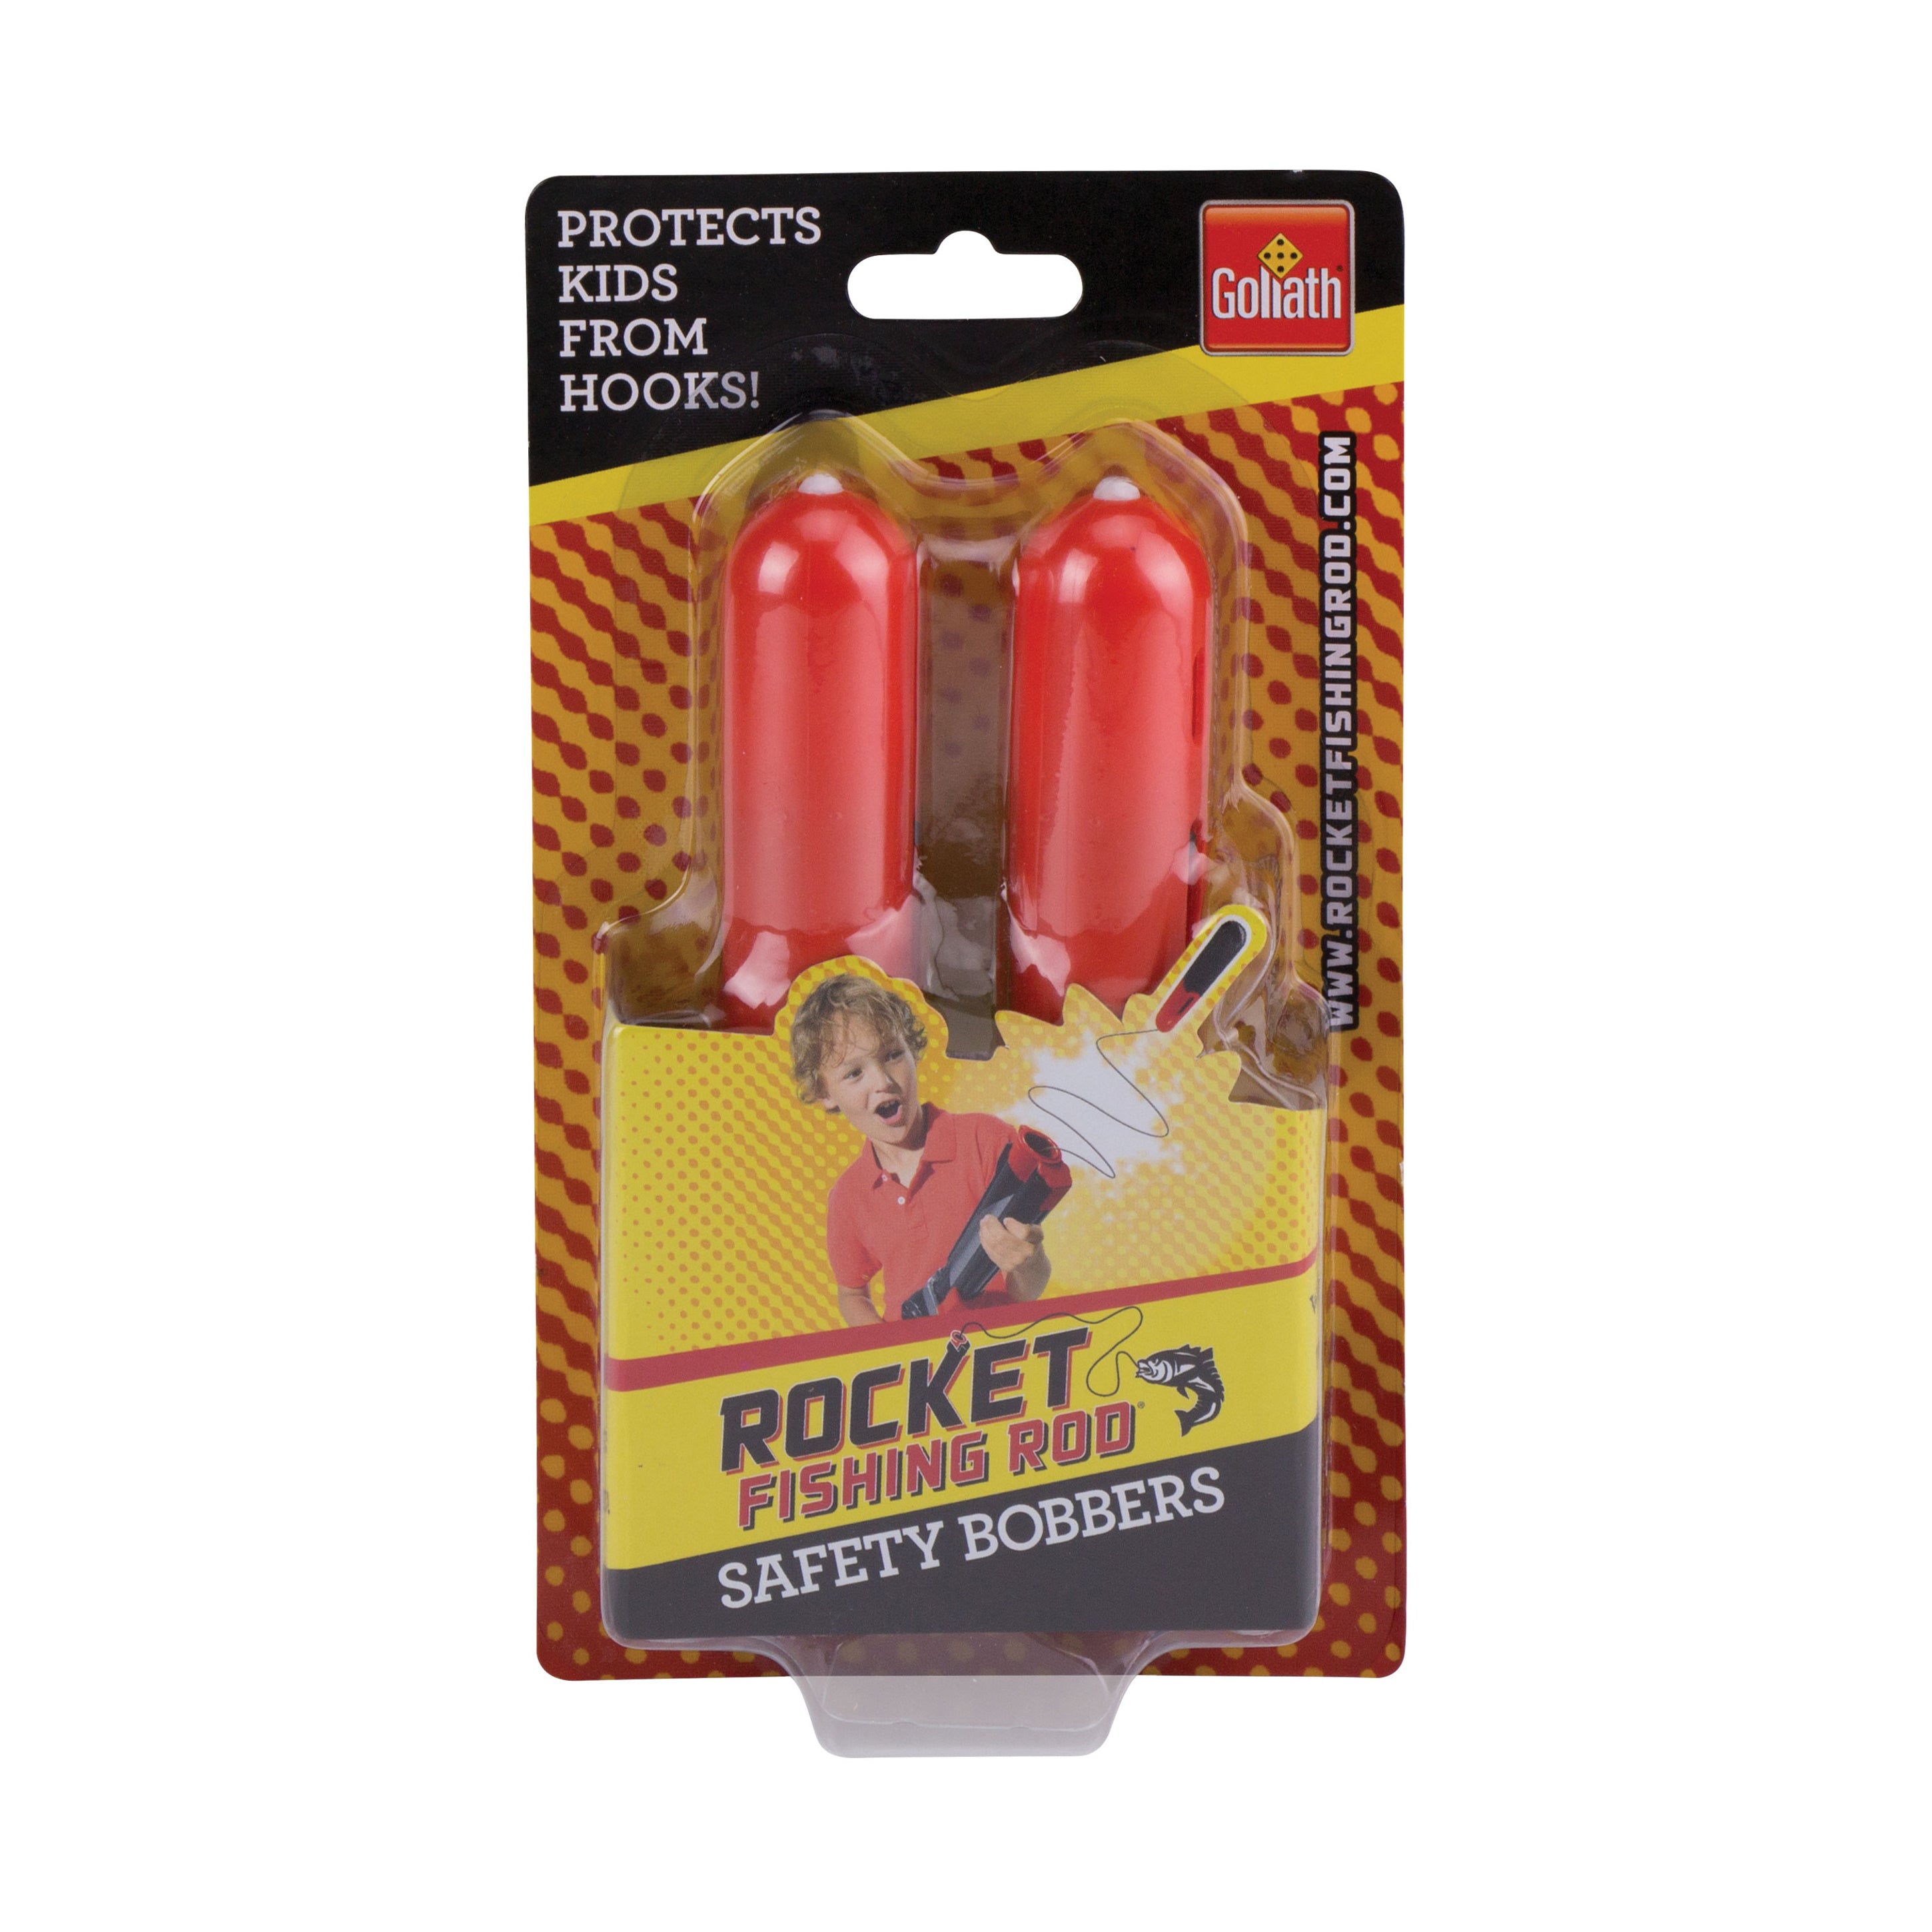 Goliath Kids Rocket Fishing Pole w/ Bait Bucket & 2 Rocket Safety